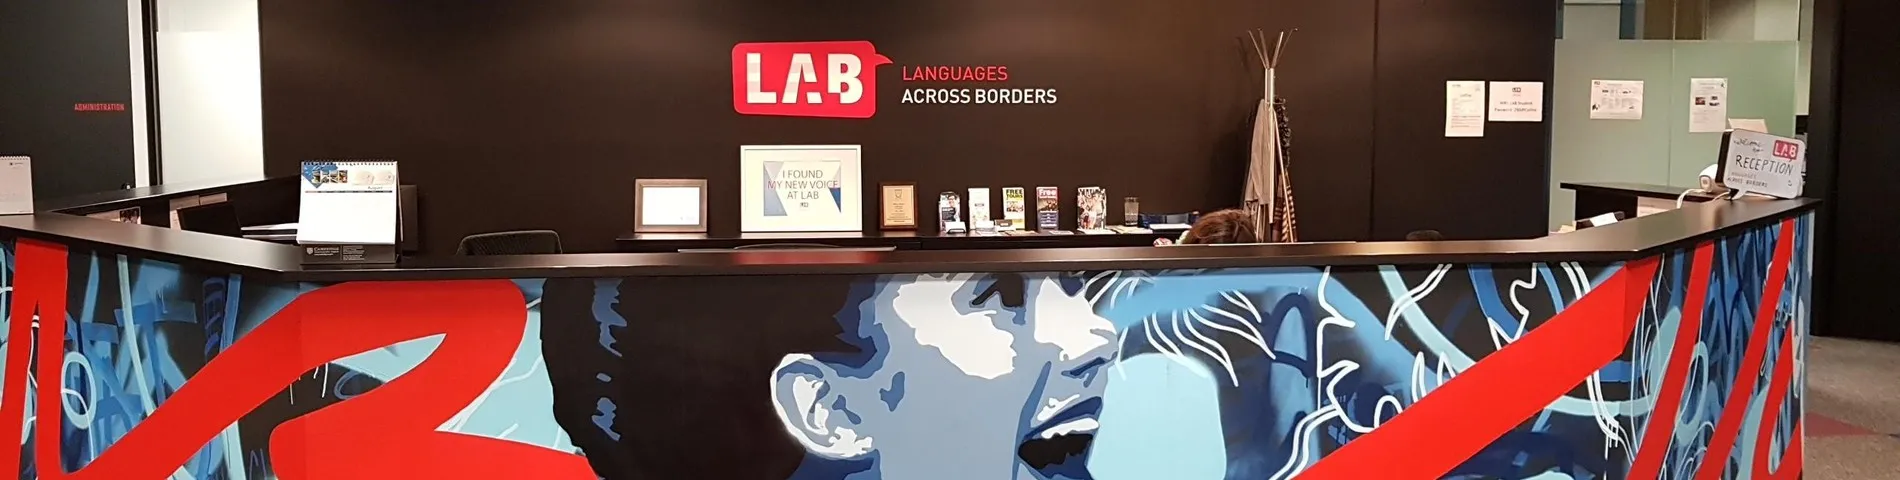 LAB - Languages Across Borders รูปภาพ 1